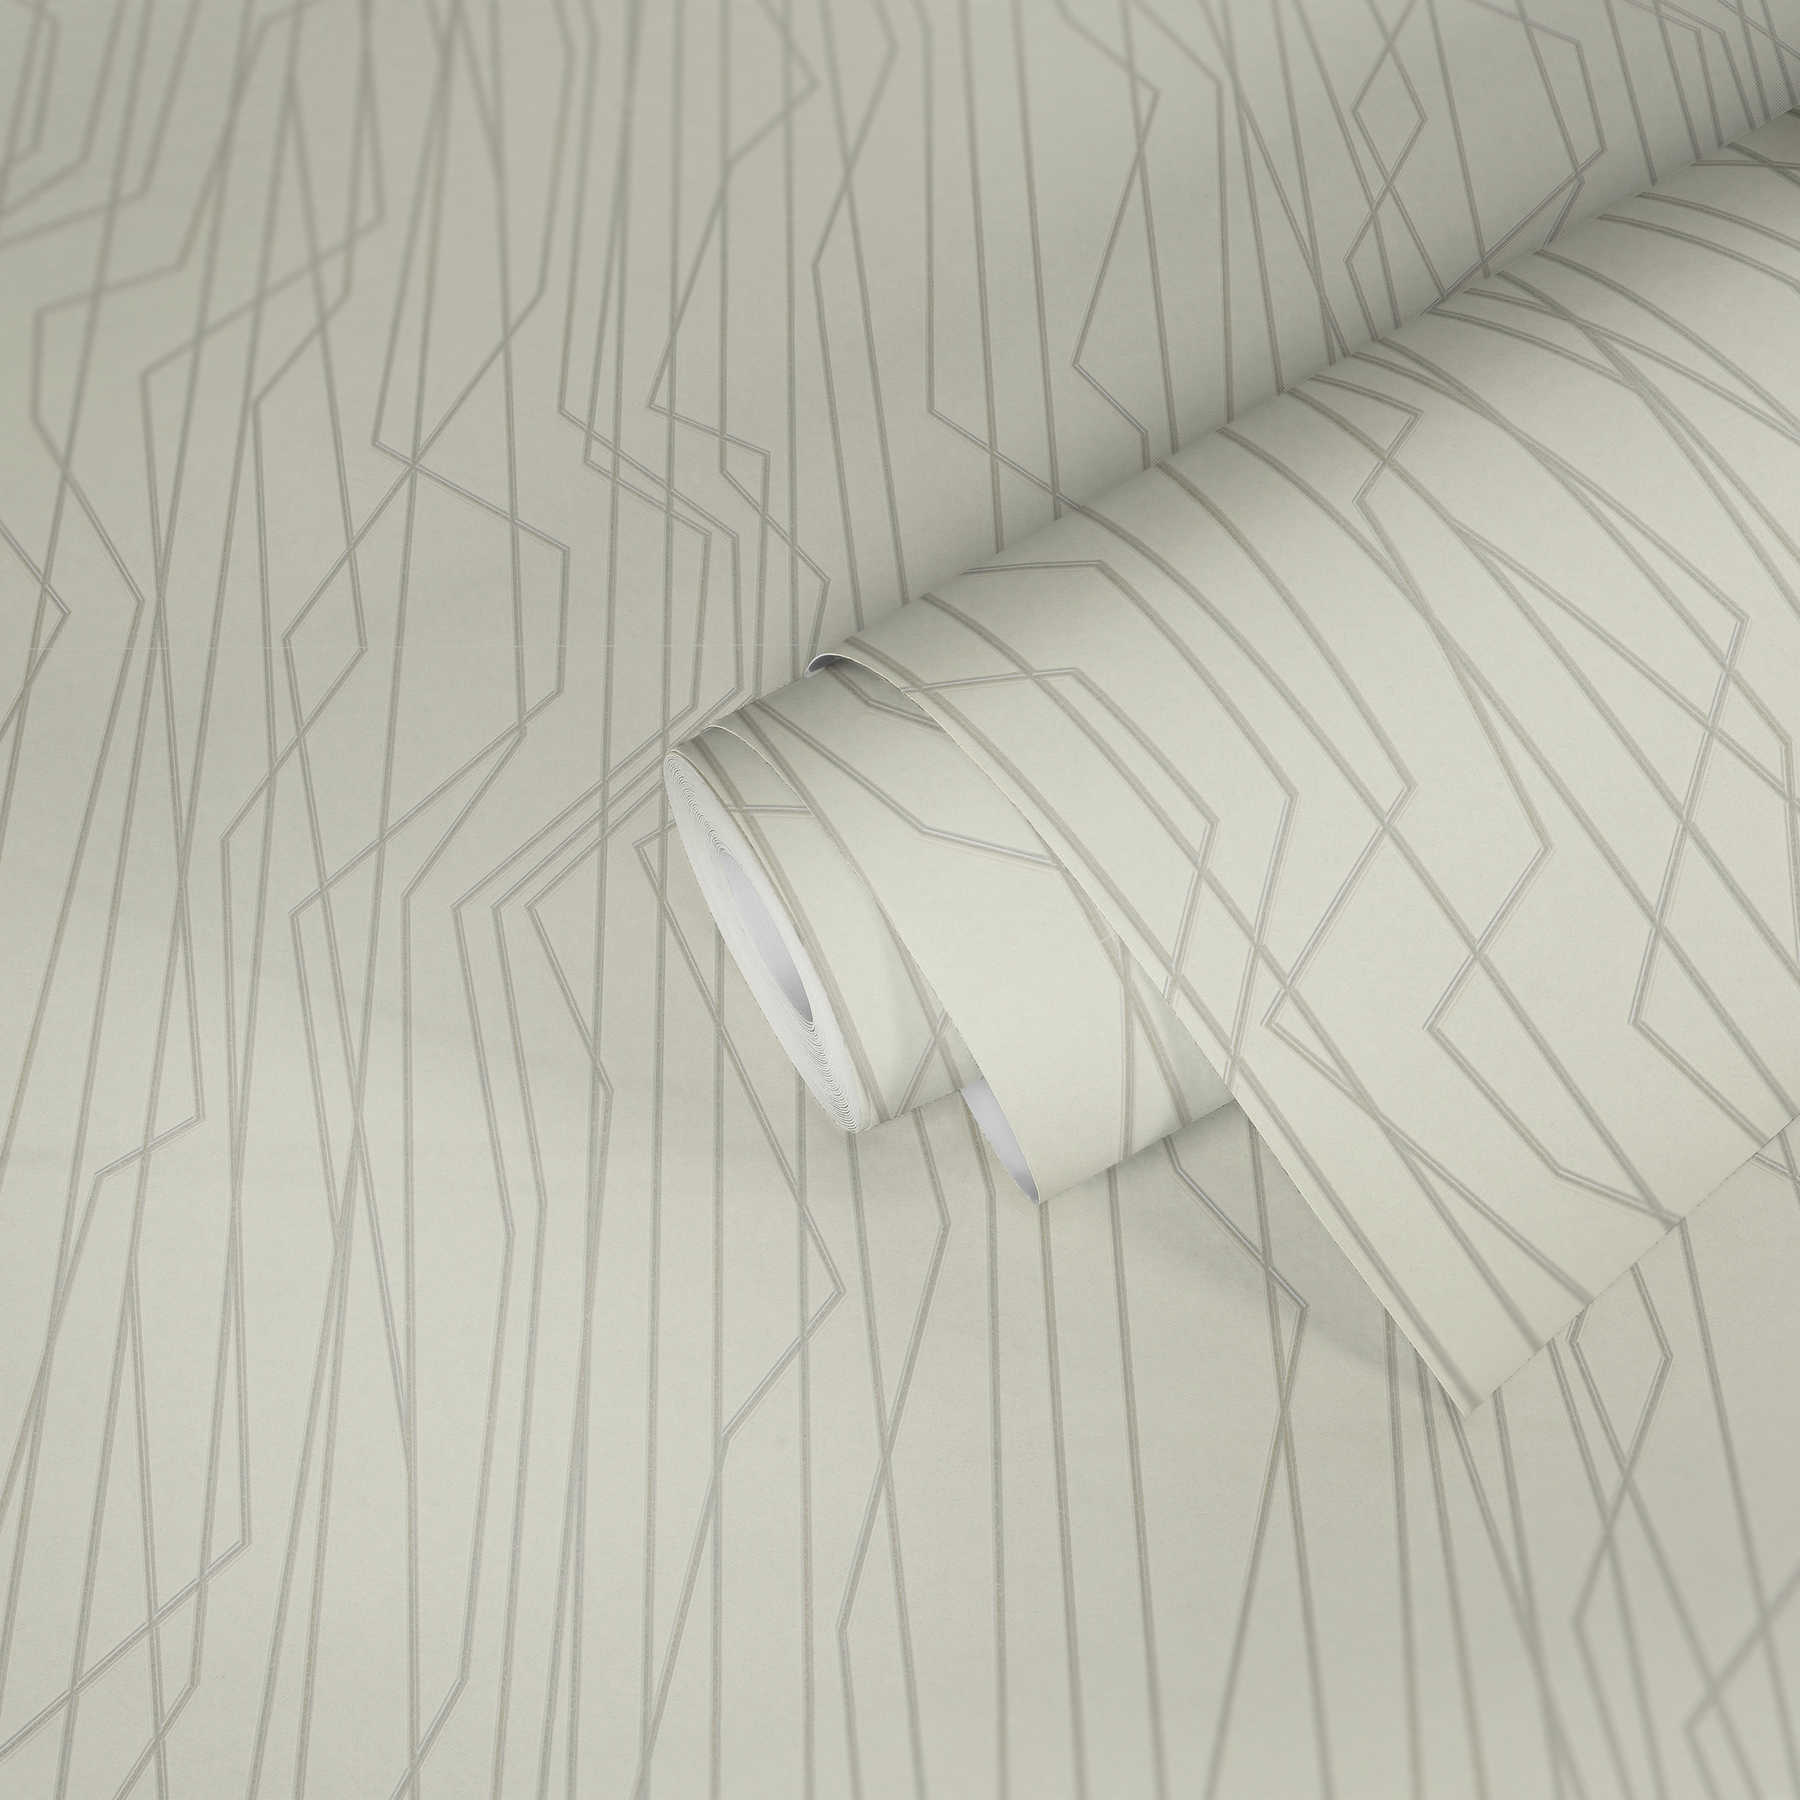             Behang met geometrisch patroon & metalen details - grijs, wit
        